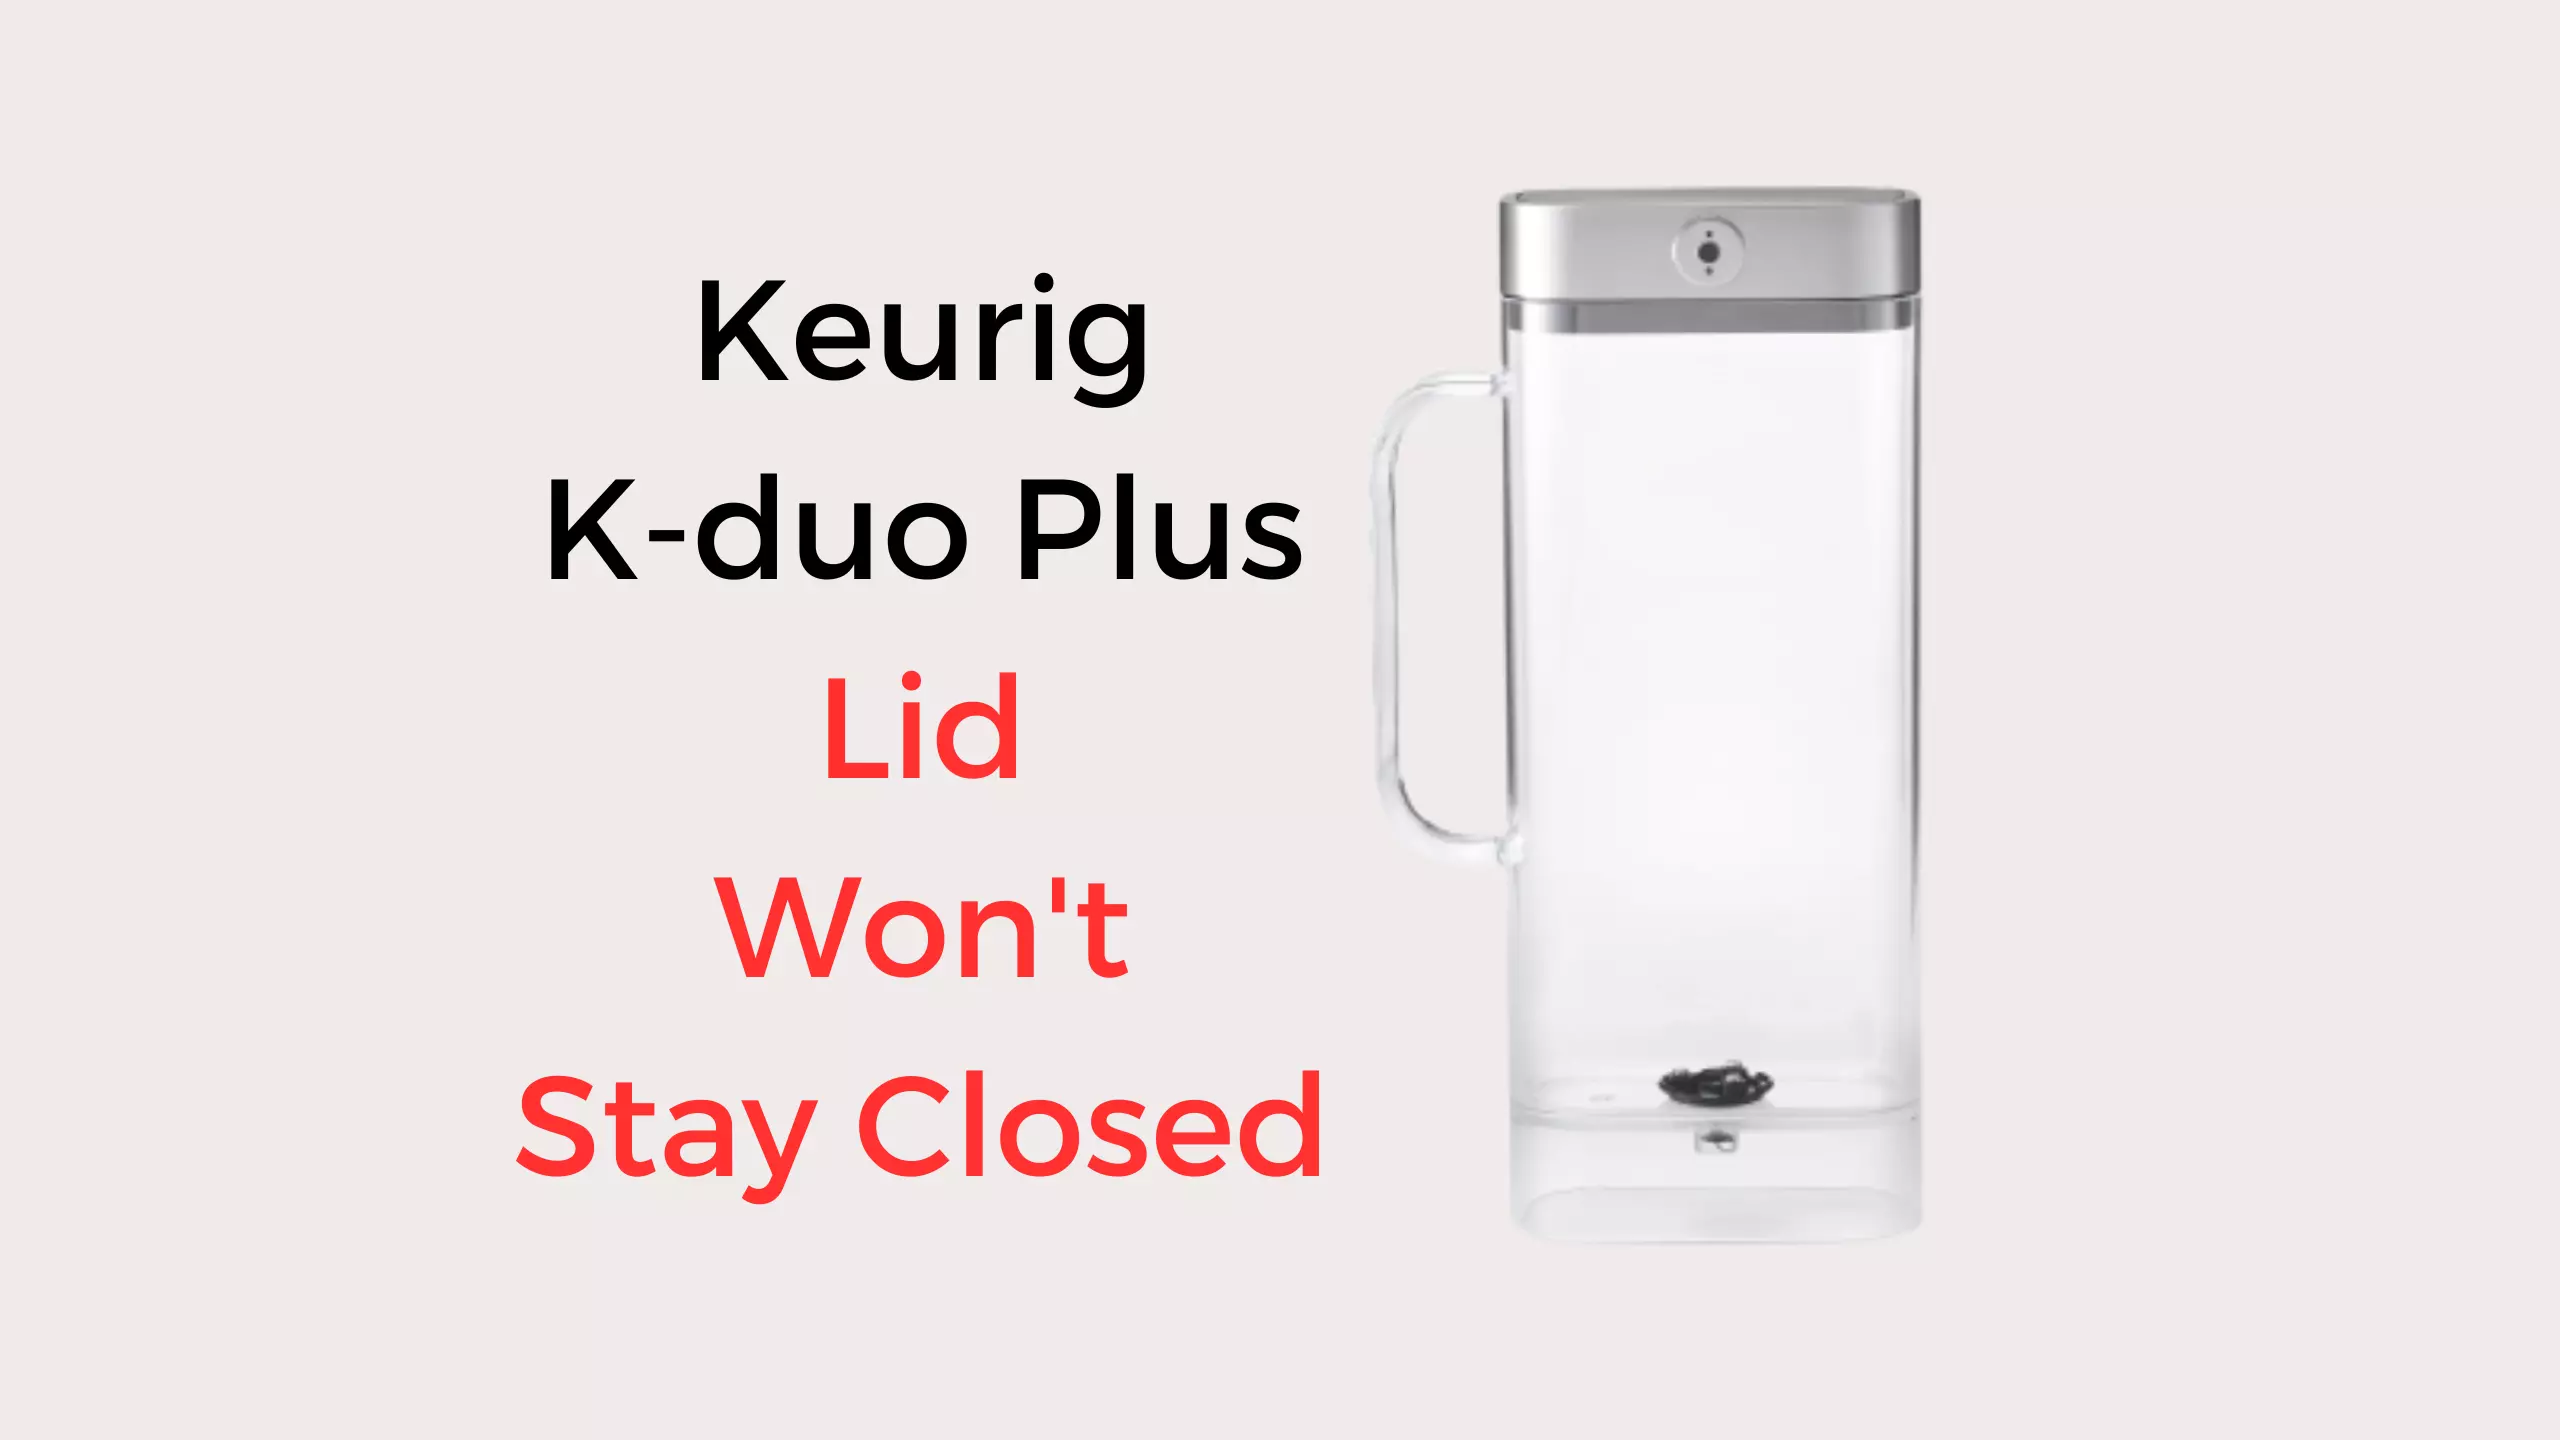 keurig k-duo plus lid won't stay closed